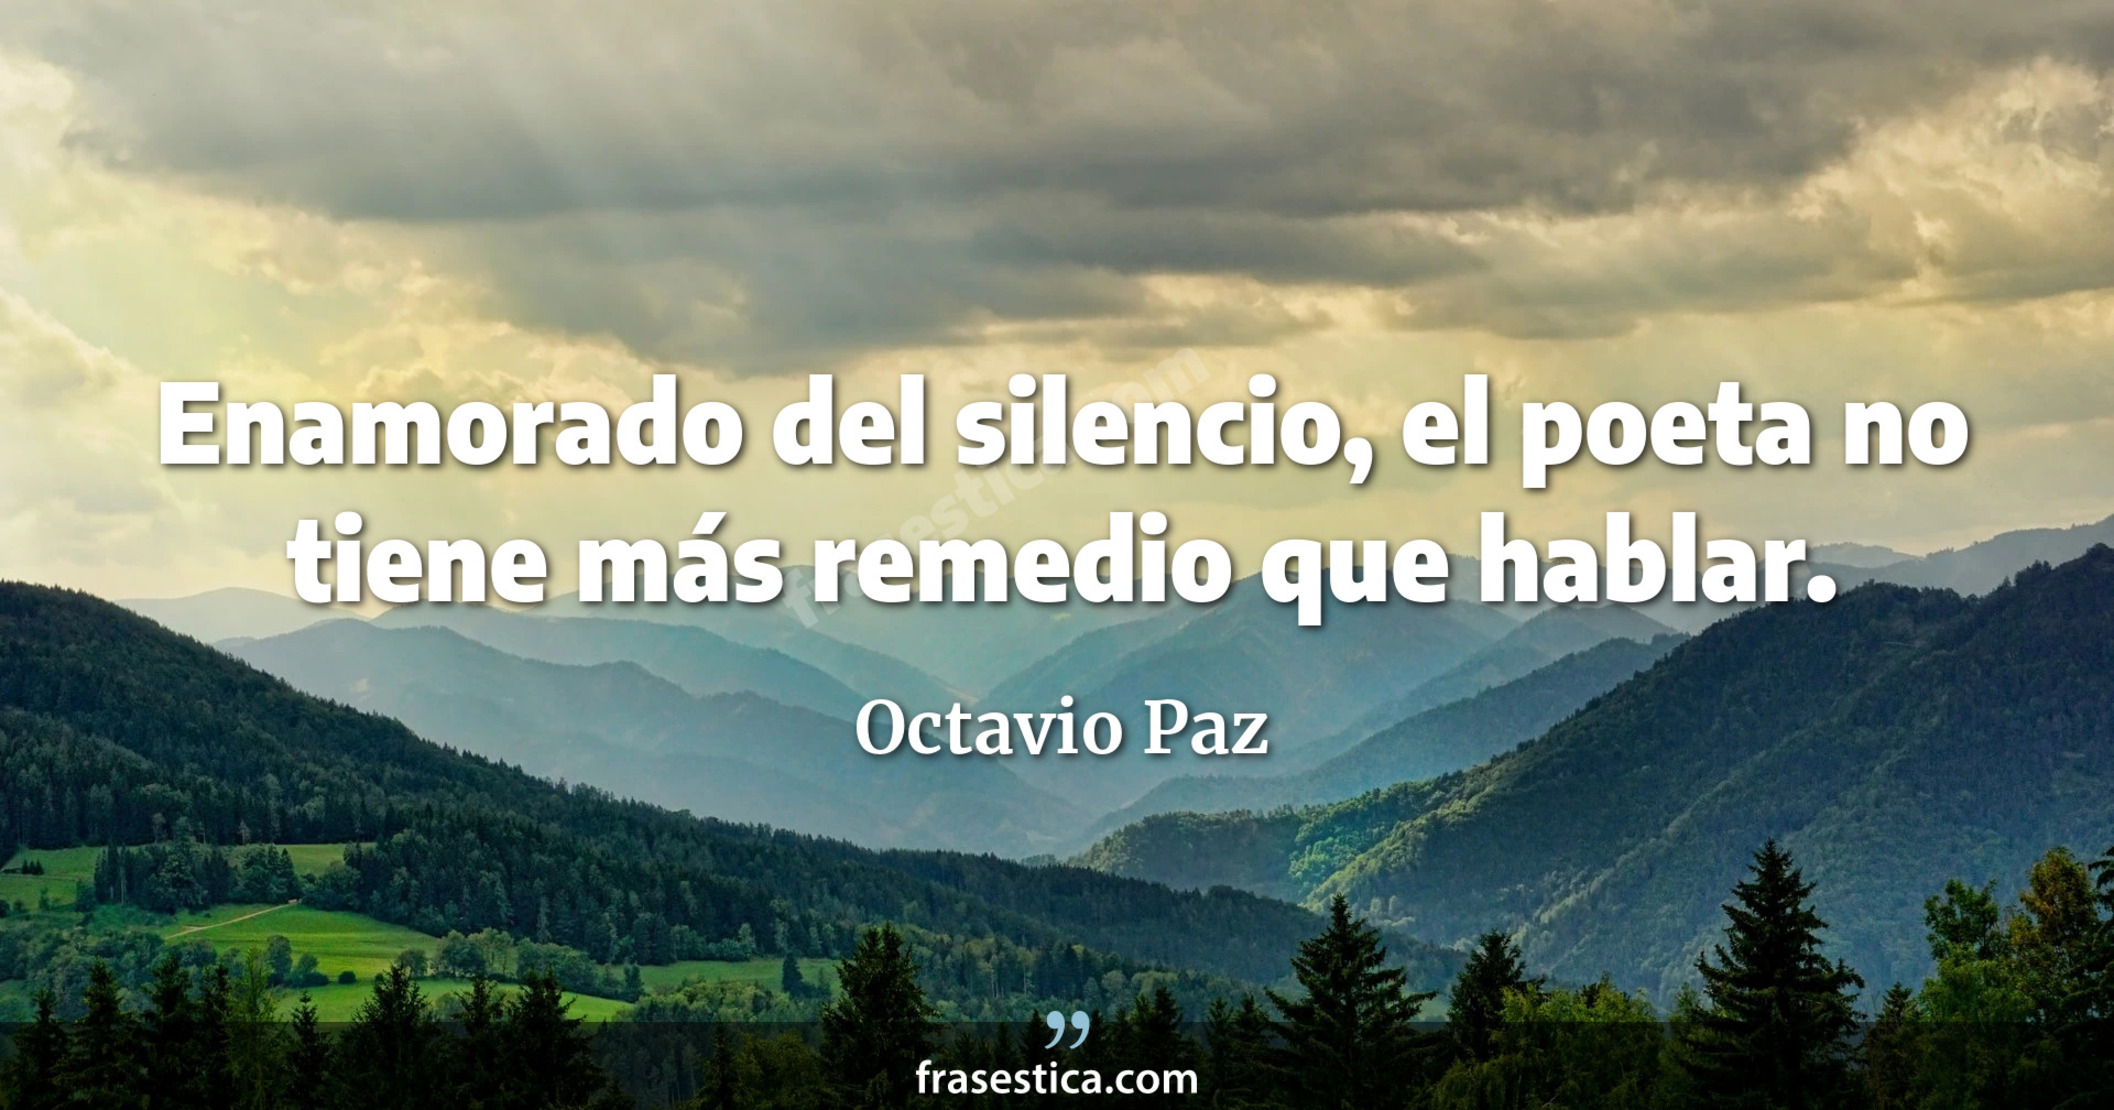 Enamorado del silencio, el poeta no tiene más remedio que hablar. - Octavio Paz